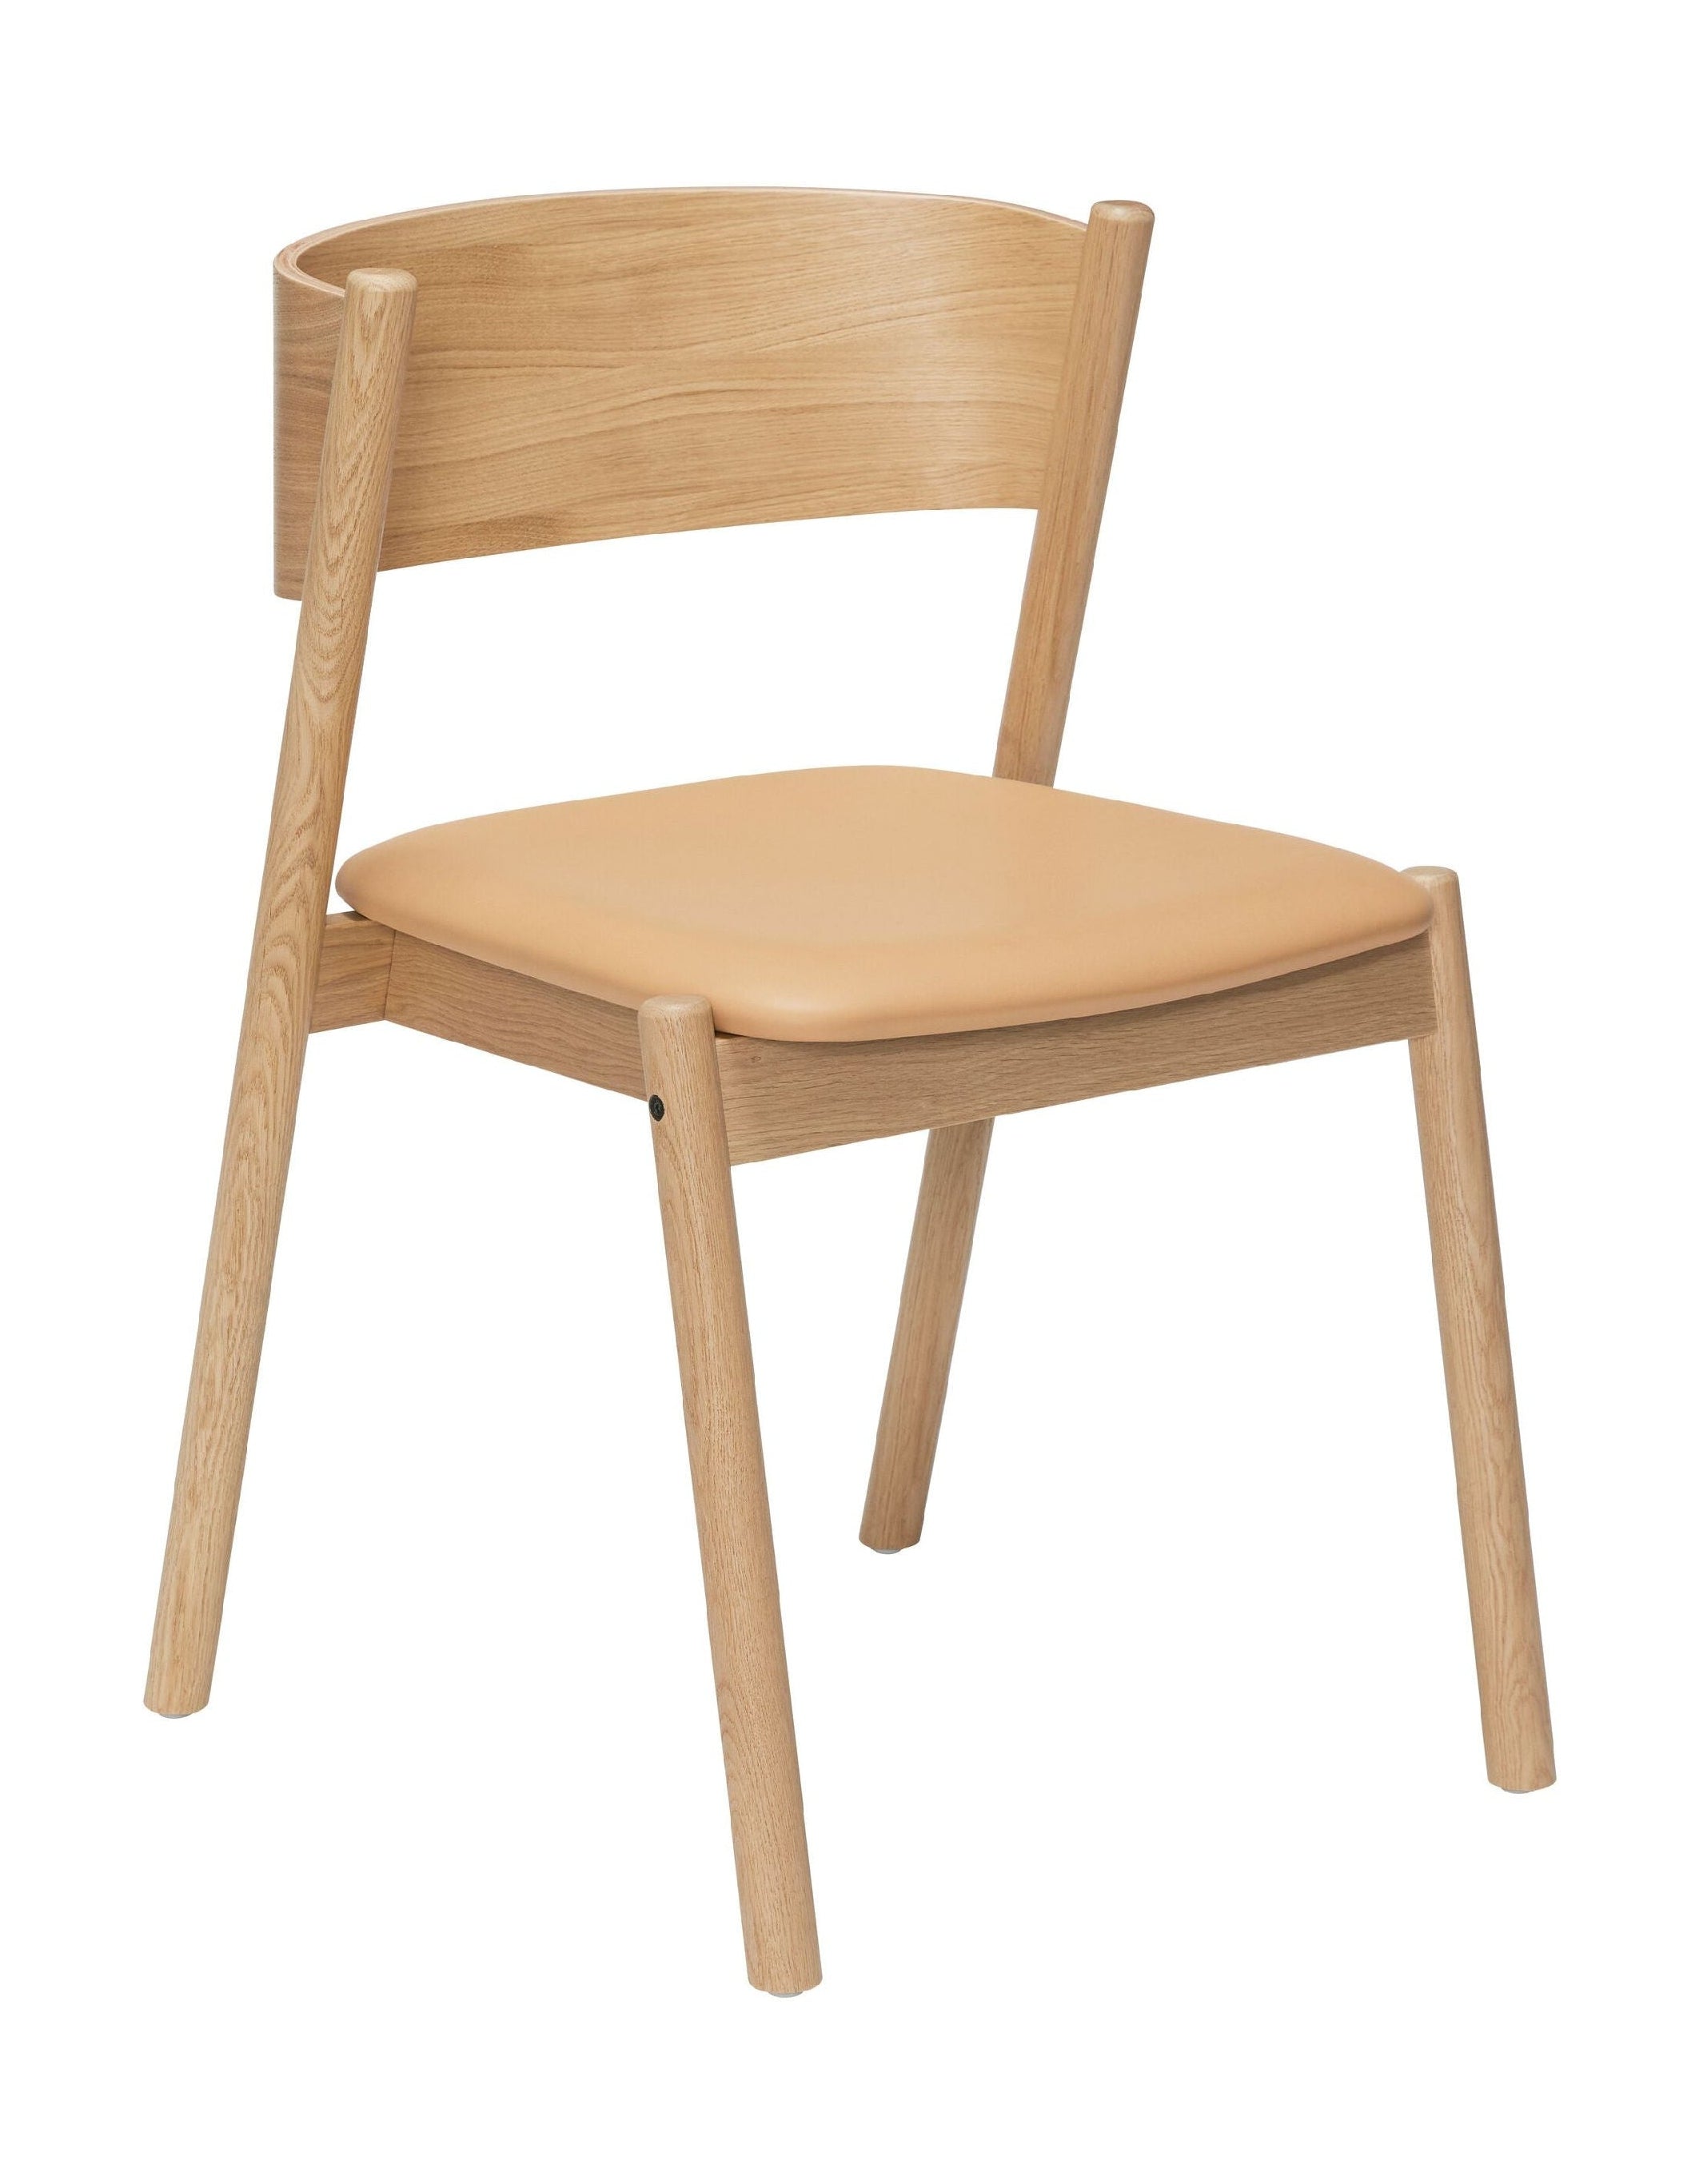 Hübsch šikmá jídelní židle, sedadlo přirozené